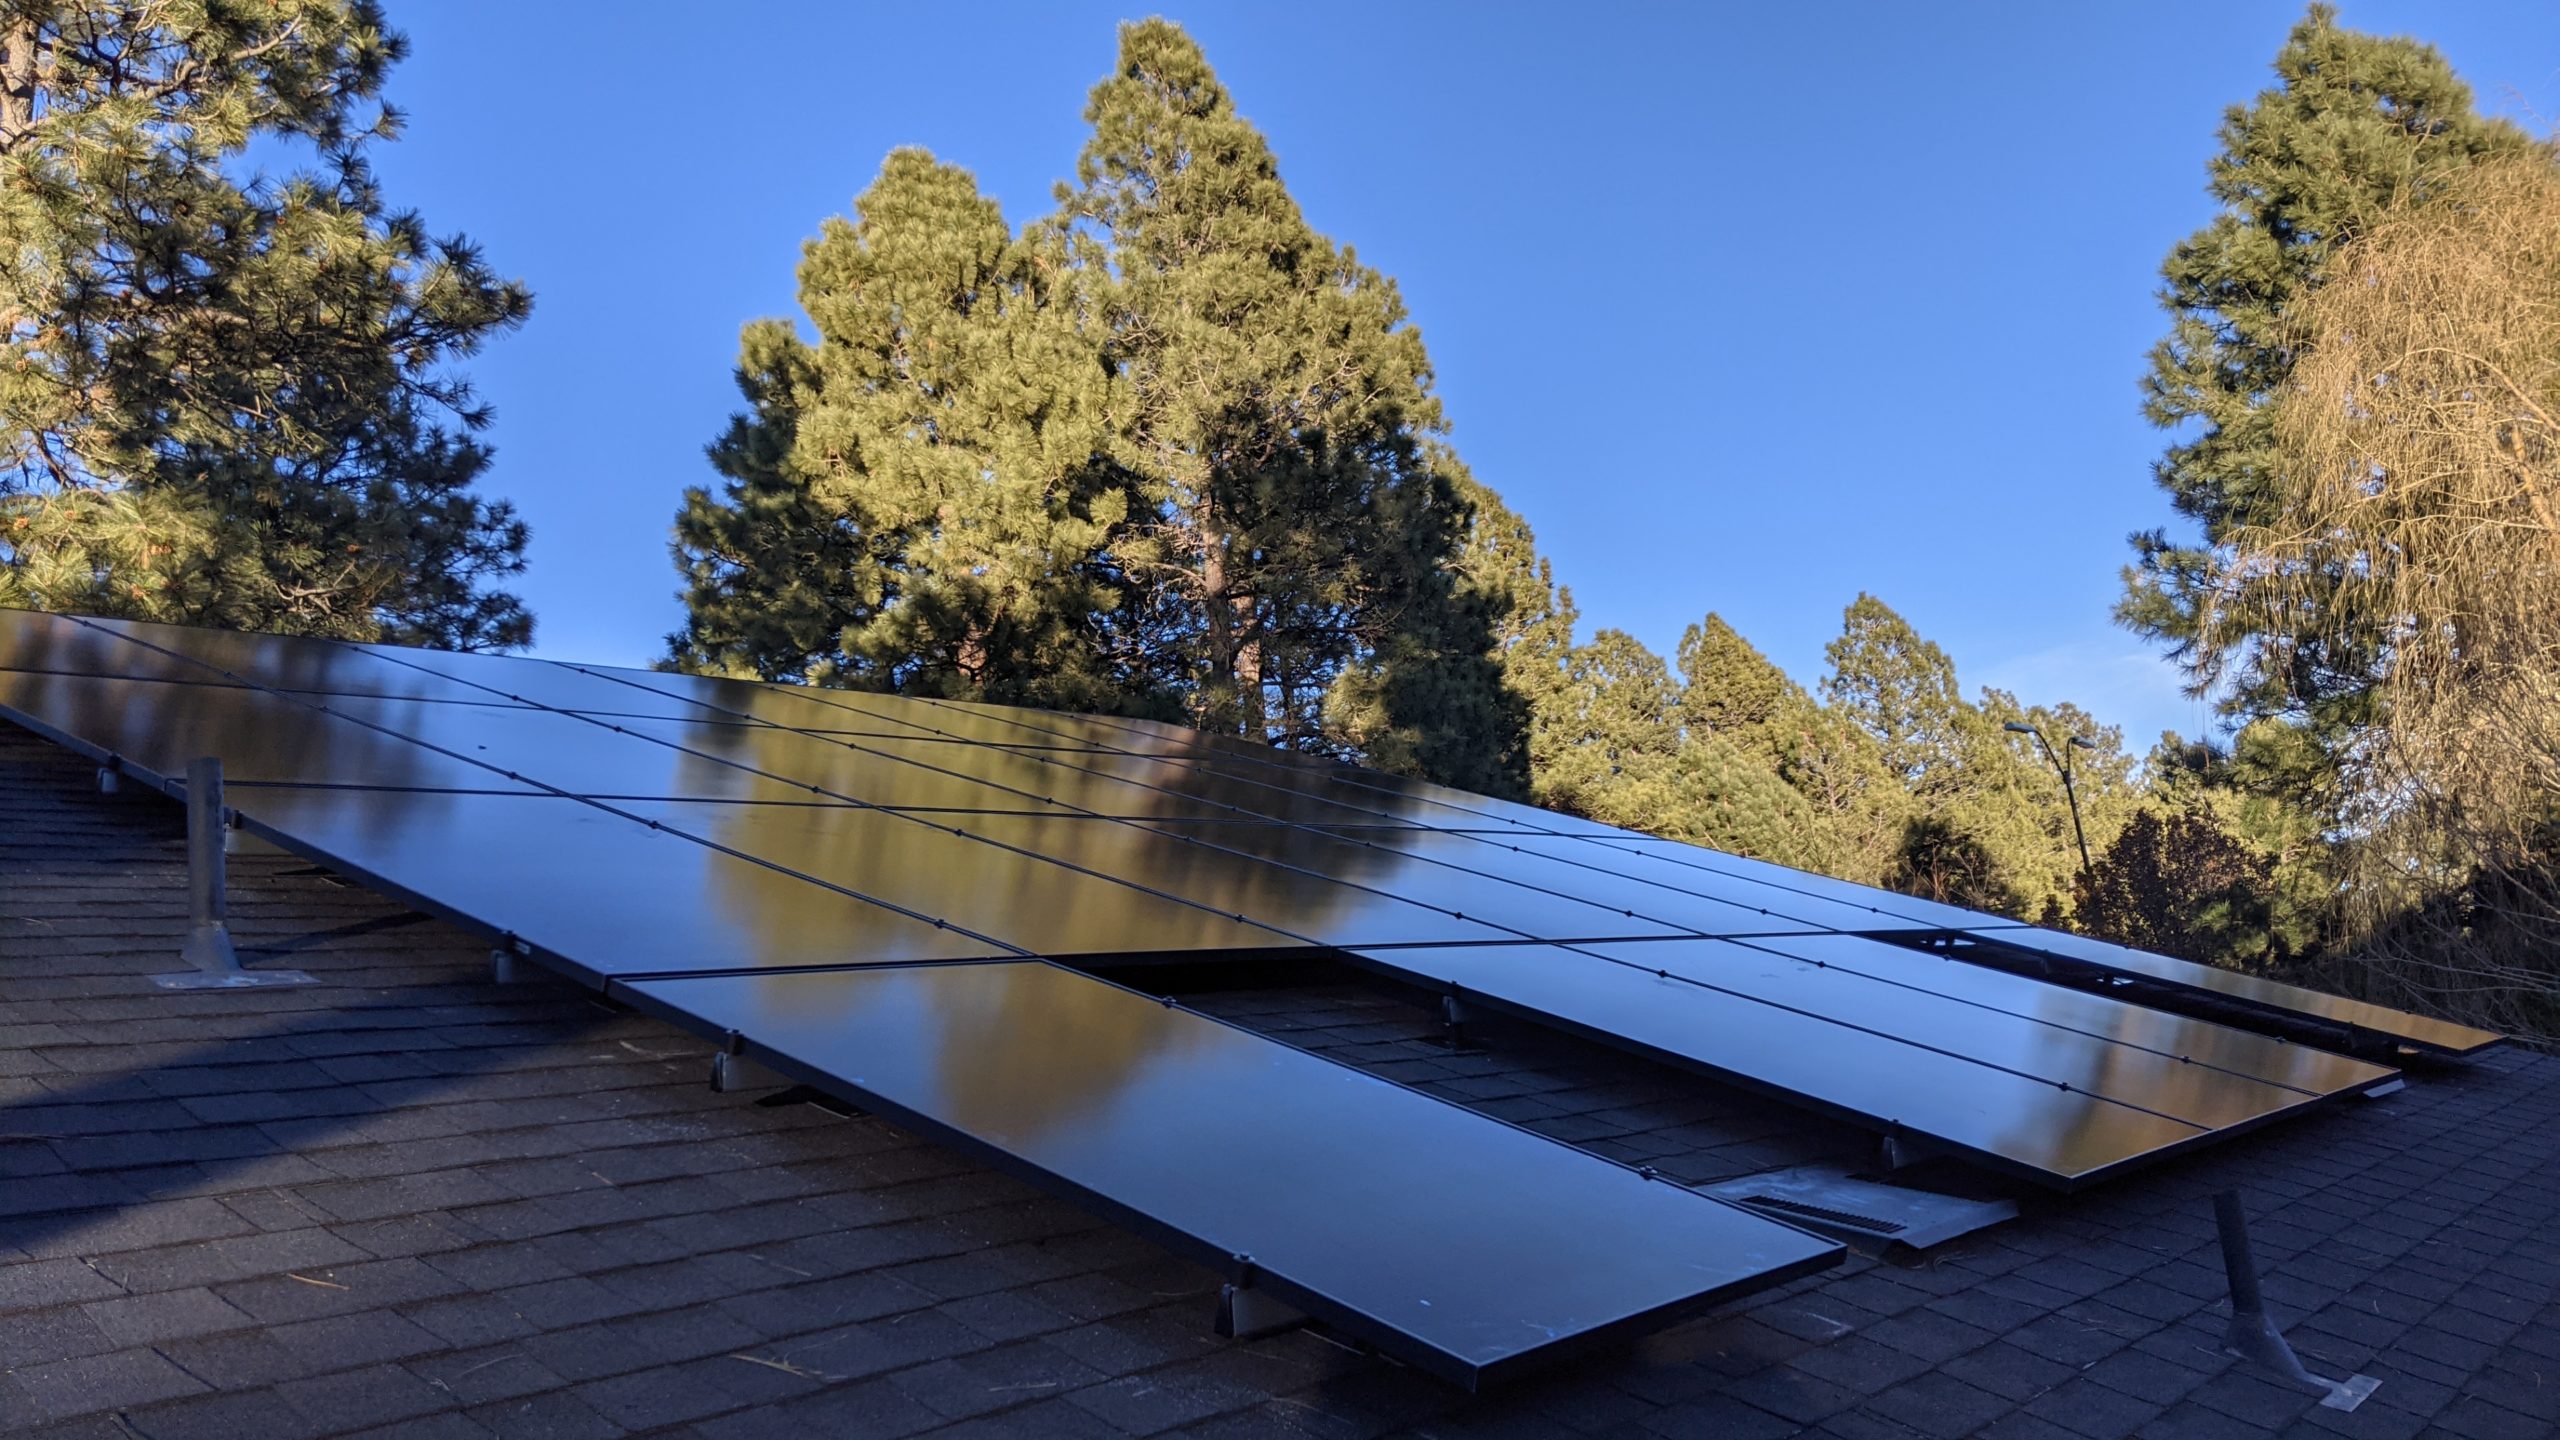 Ironridge Solar racking system in Flagstaff, Arizona